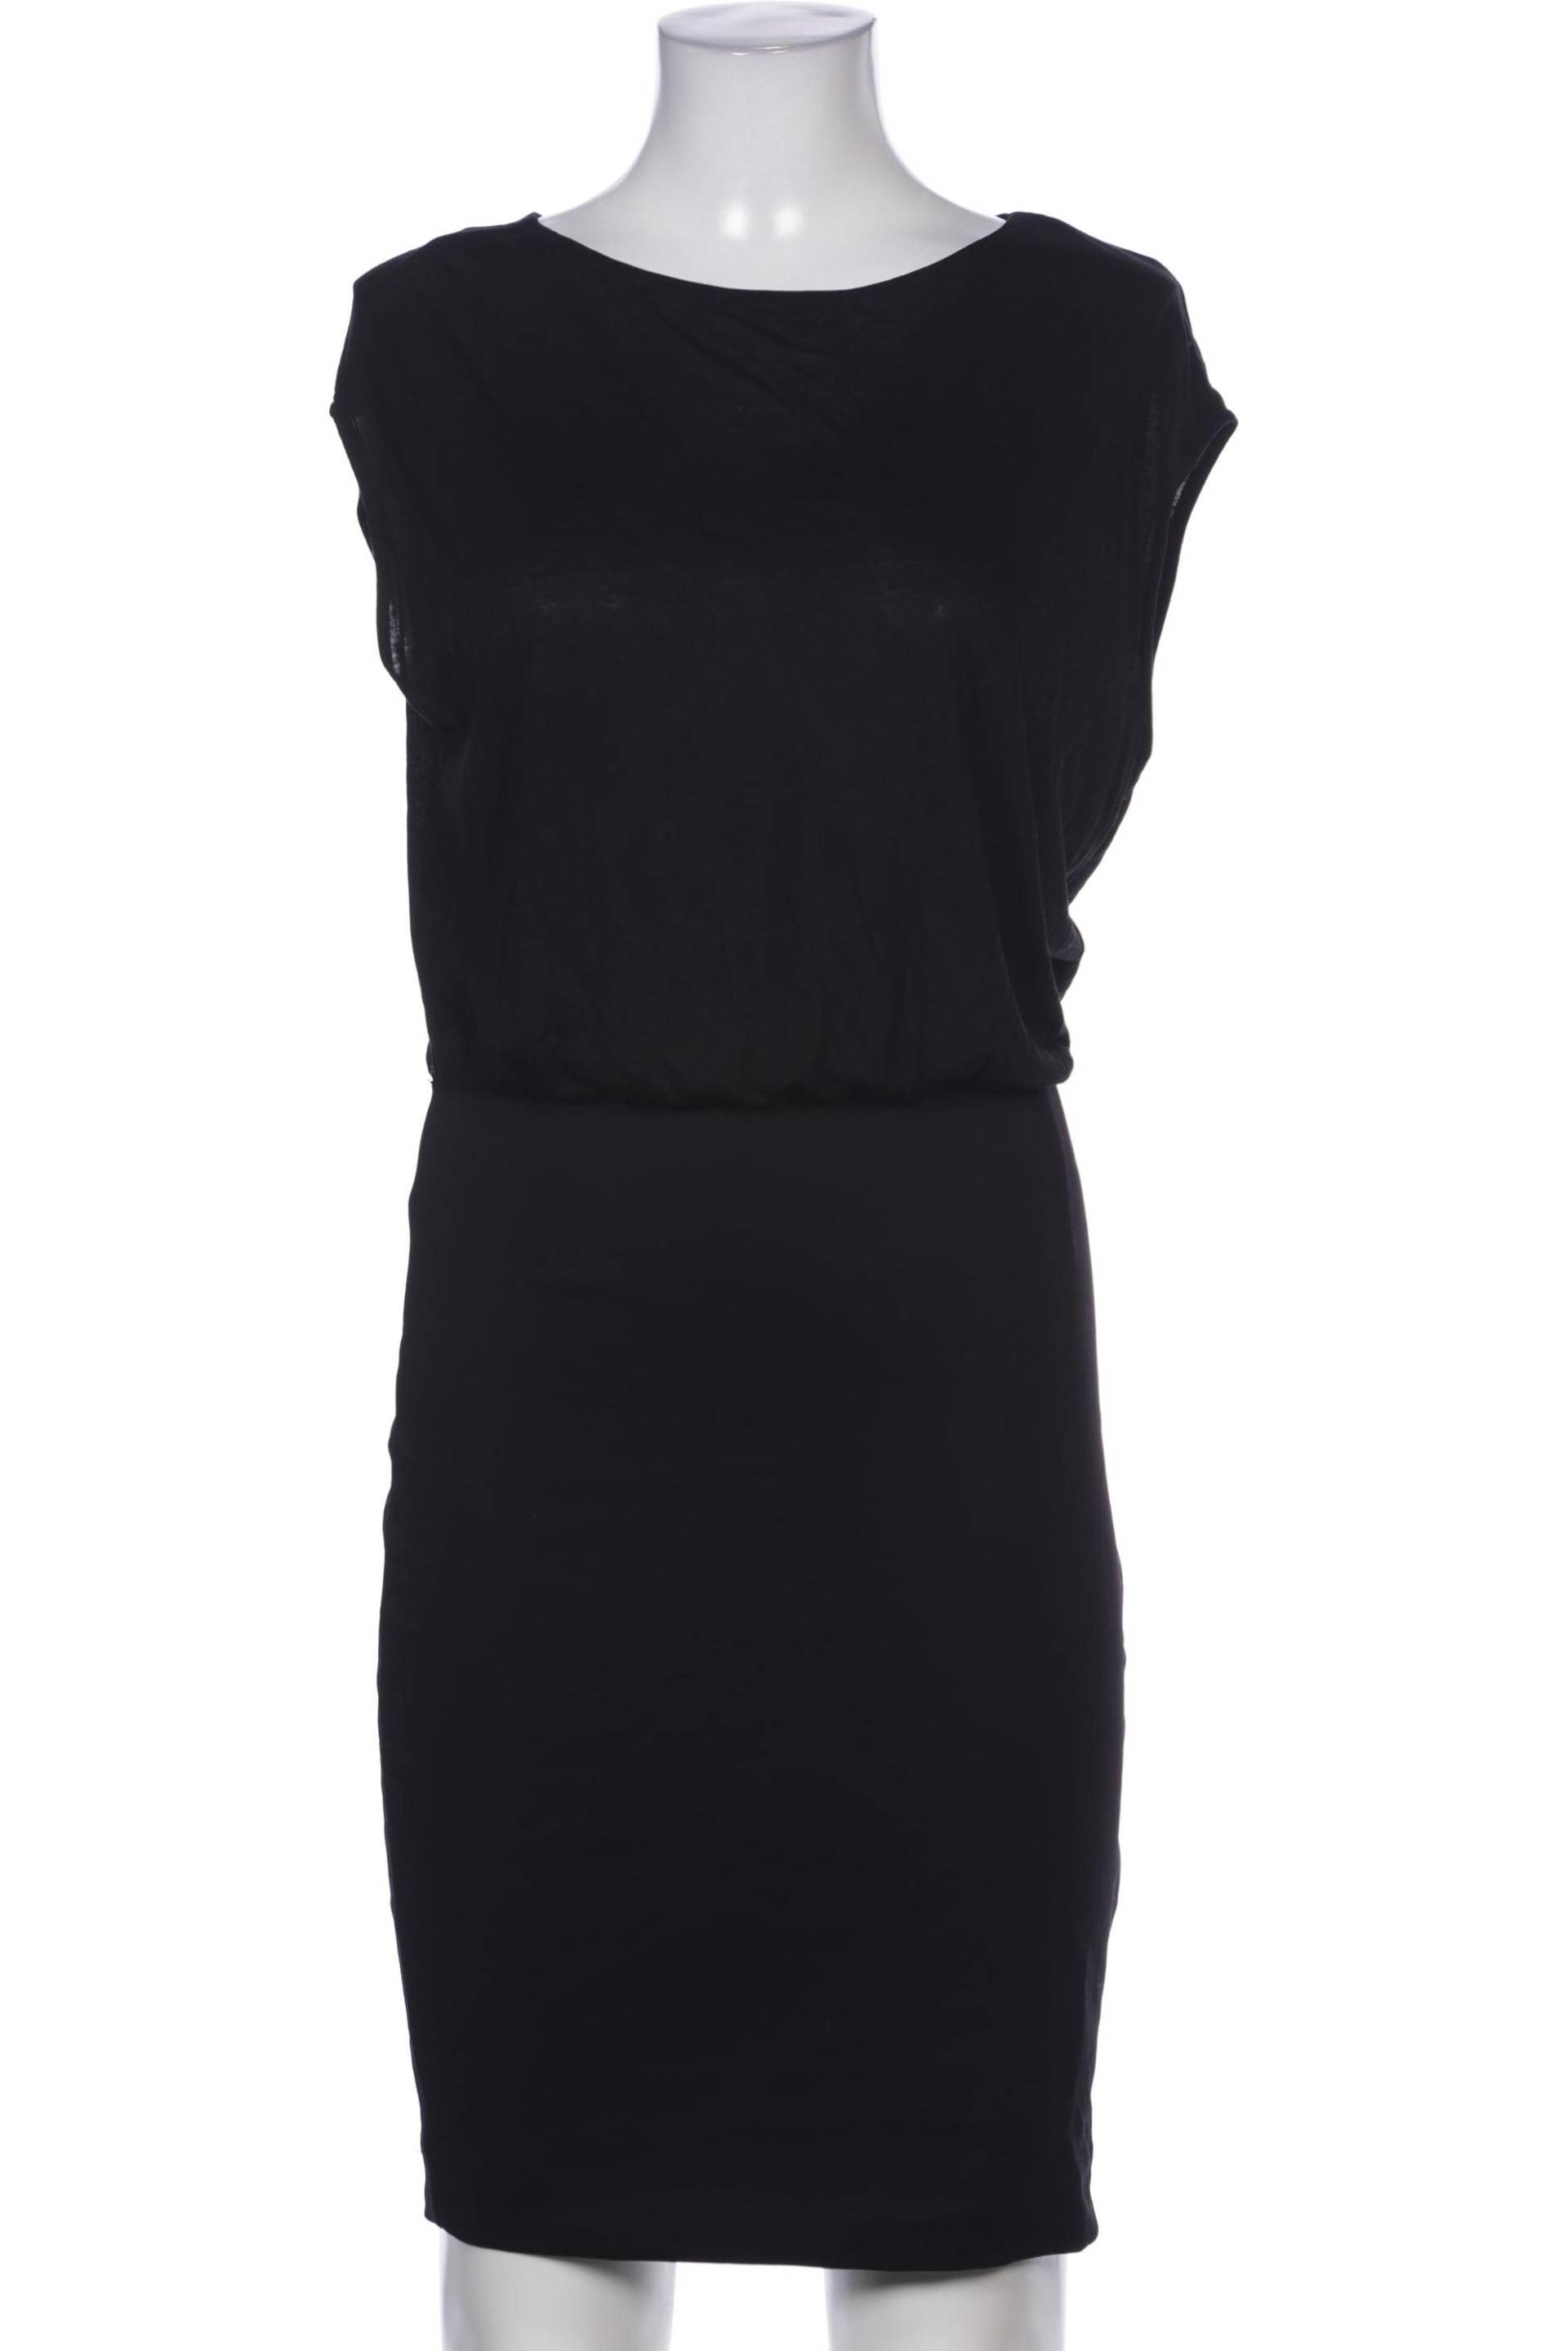 Escada Sport Damen Kleid, schwarz, Gr. 36 von ESCADA SPORT